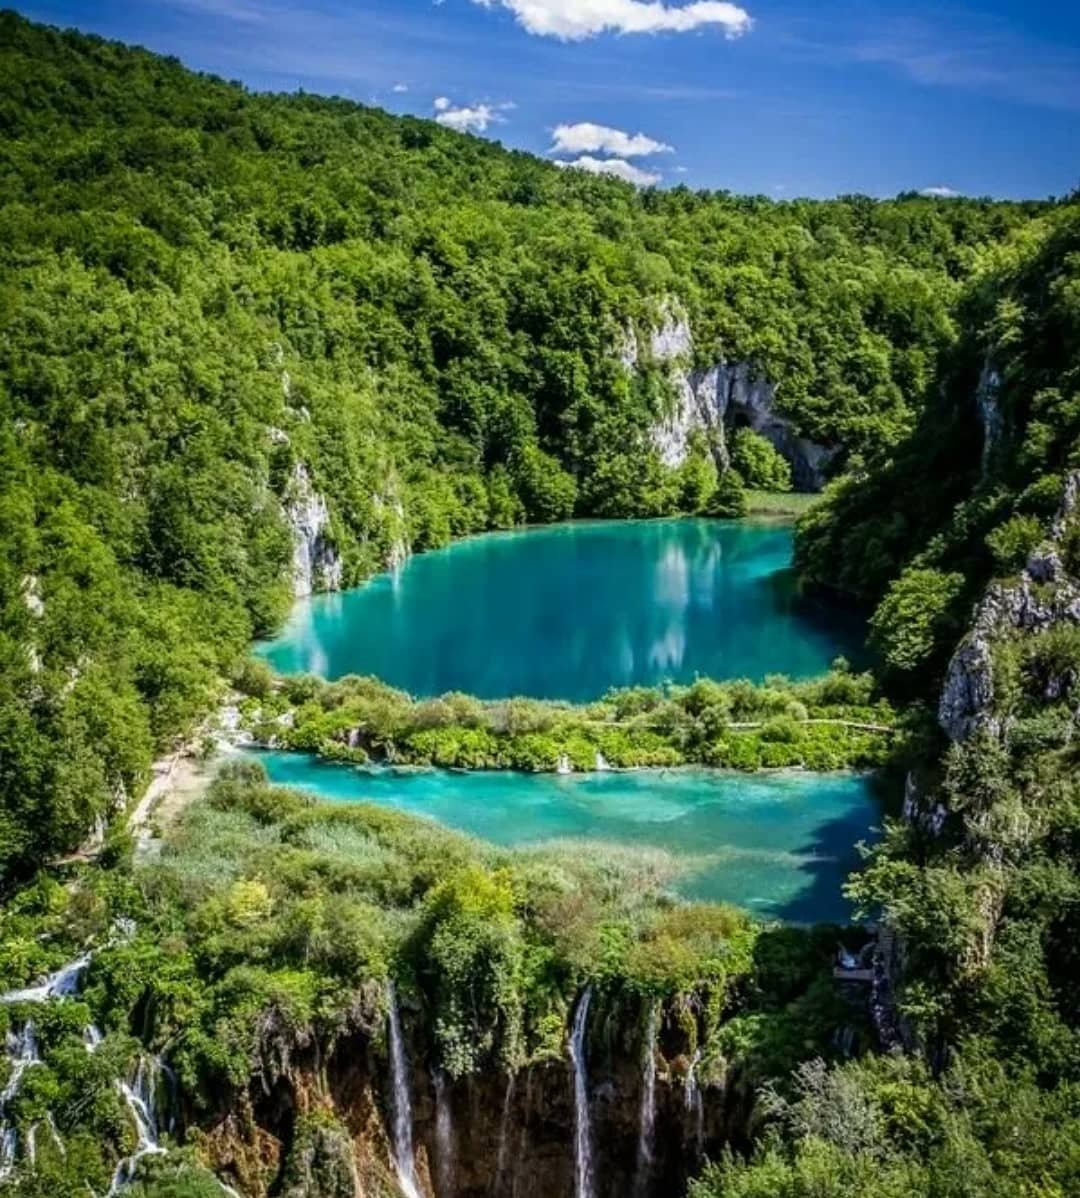 Самый красивый национальный. Плитвицкие озёра Хорватия. Хорватия национальный парк Плитвице. Хорватия заповедник Плитвицкие озера. Плитвицкие озера - крупнейший национальный парк Хорватии.